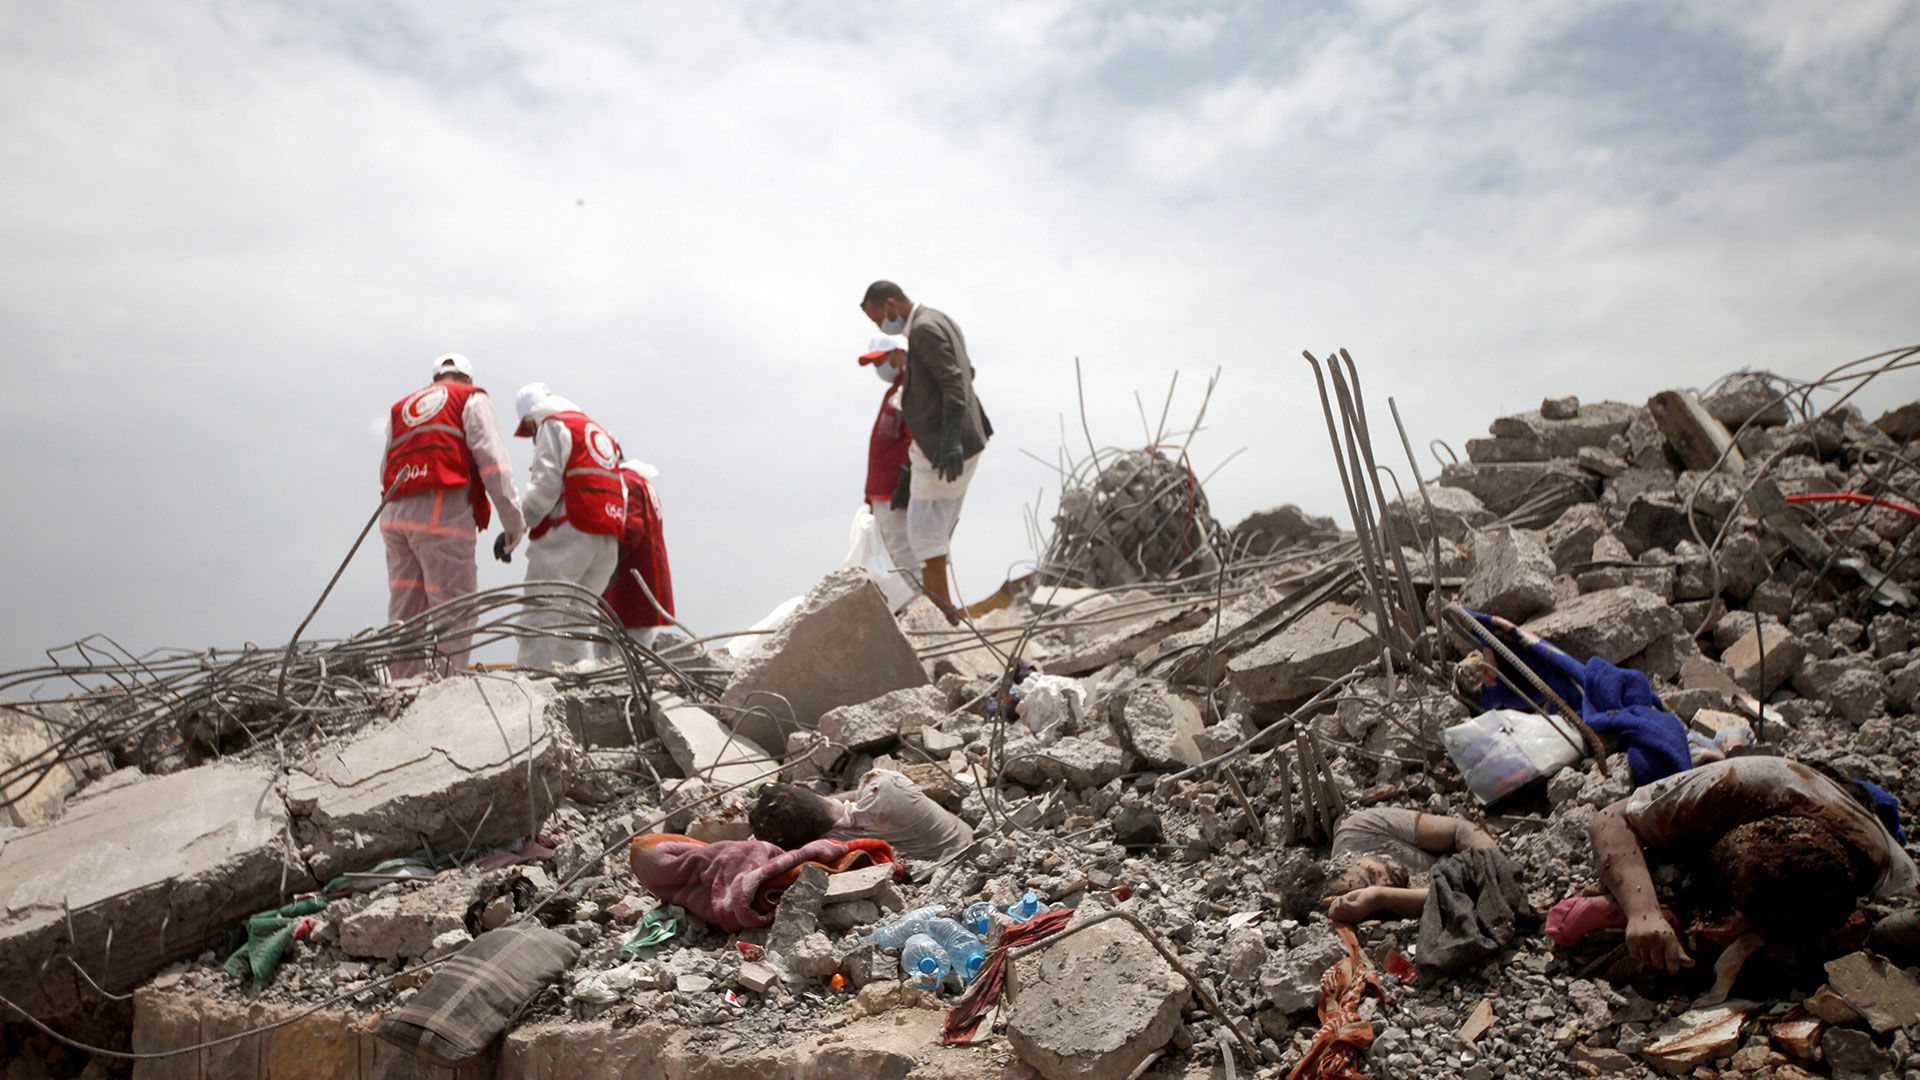 Médicos de la Cruz Roja buscan sobrevivientes entre los escombros en el lugar de los ataques aéreos dirigidos por fuerzas sauditas contra un centro de detención huti en Dhamar, Yemen, el 2 de septiembre de 2019 (REUTERS/Mohamed al-Sayaghi)